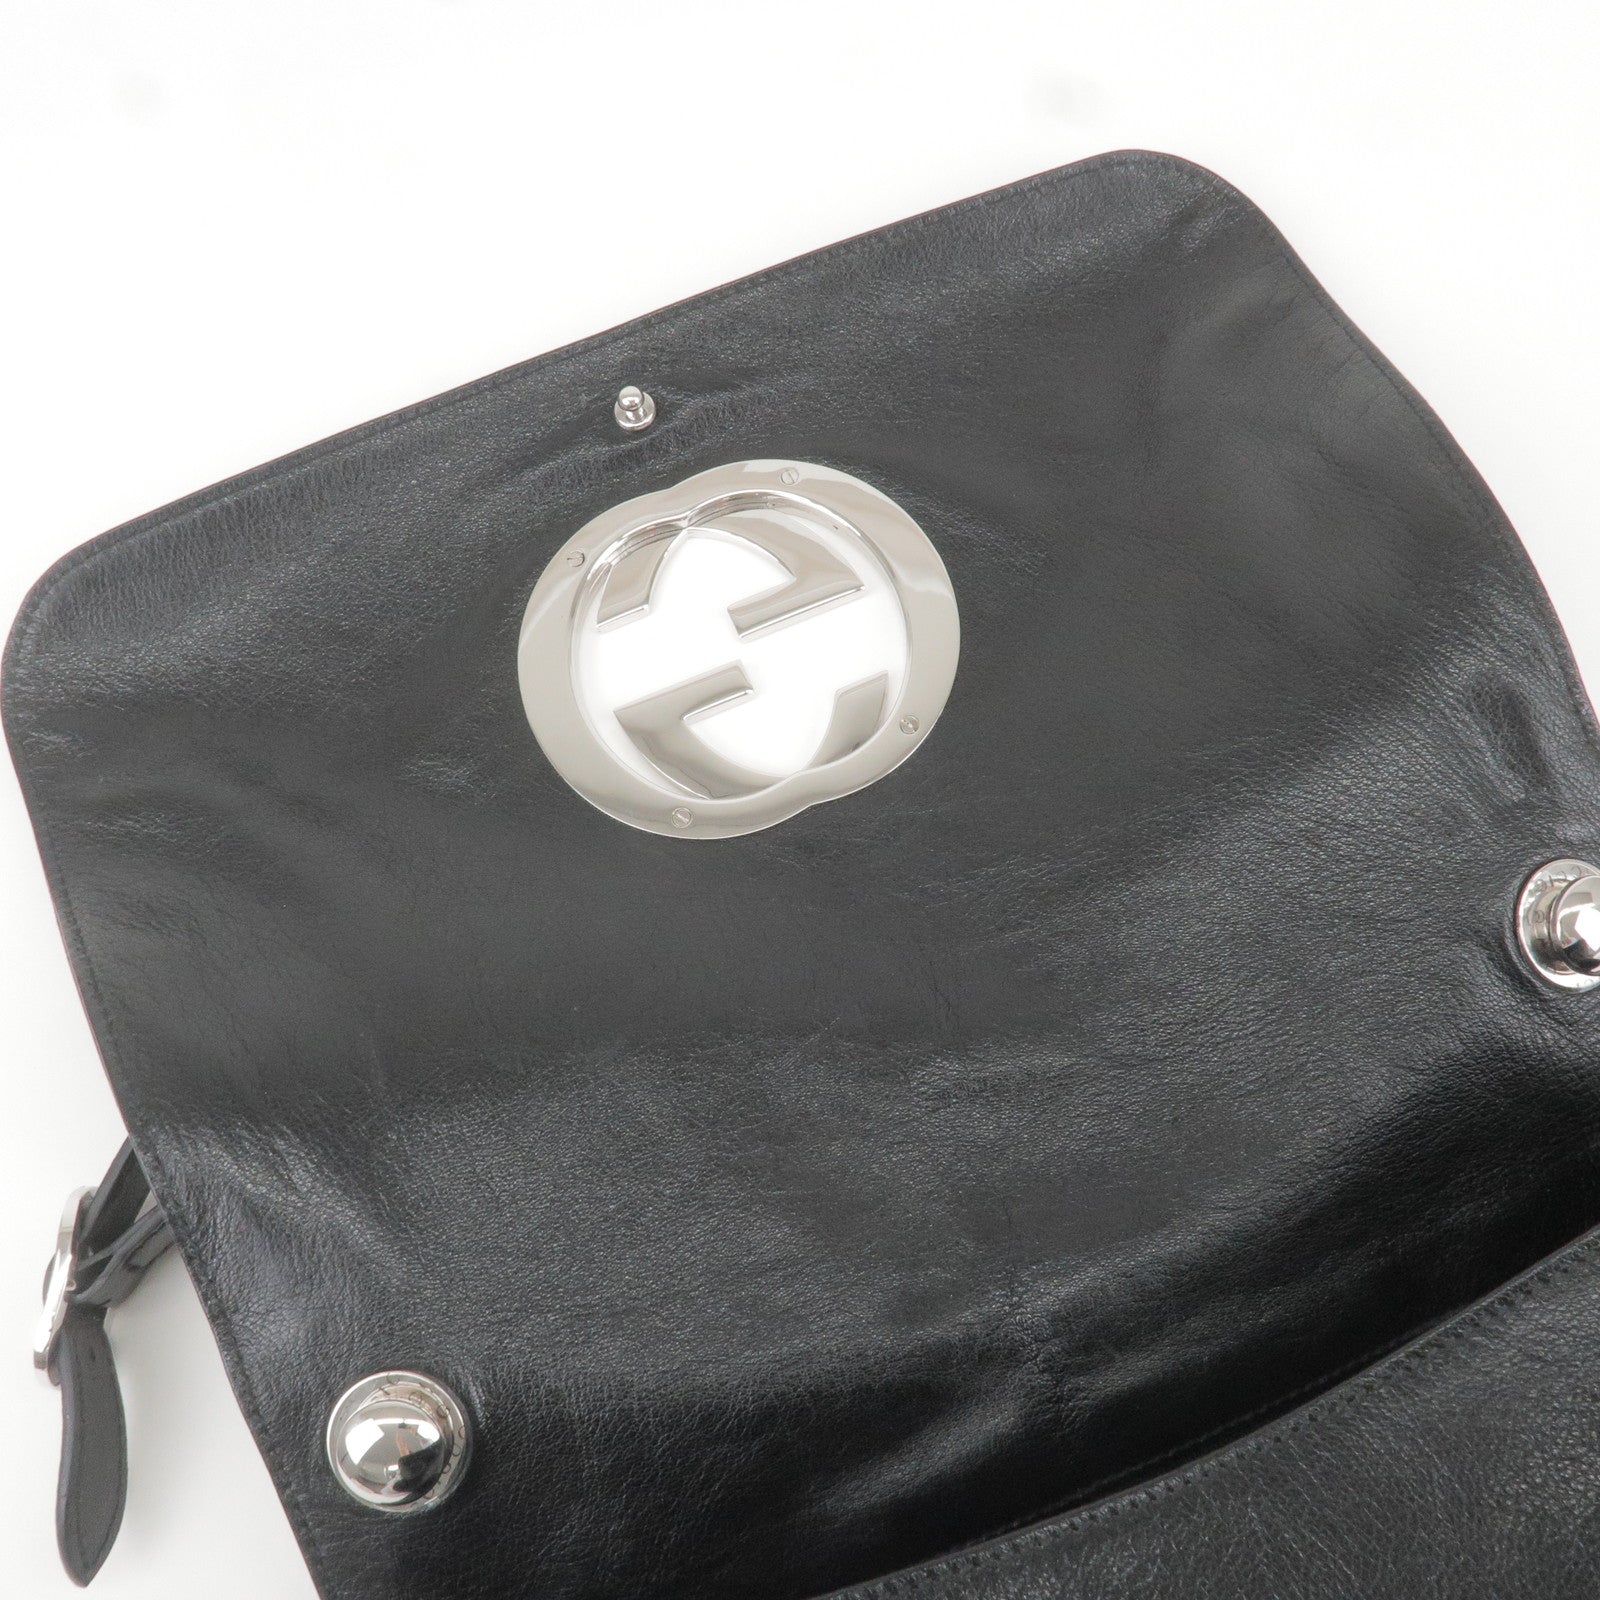 Shoulder bag with Interlocking G